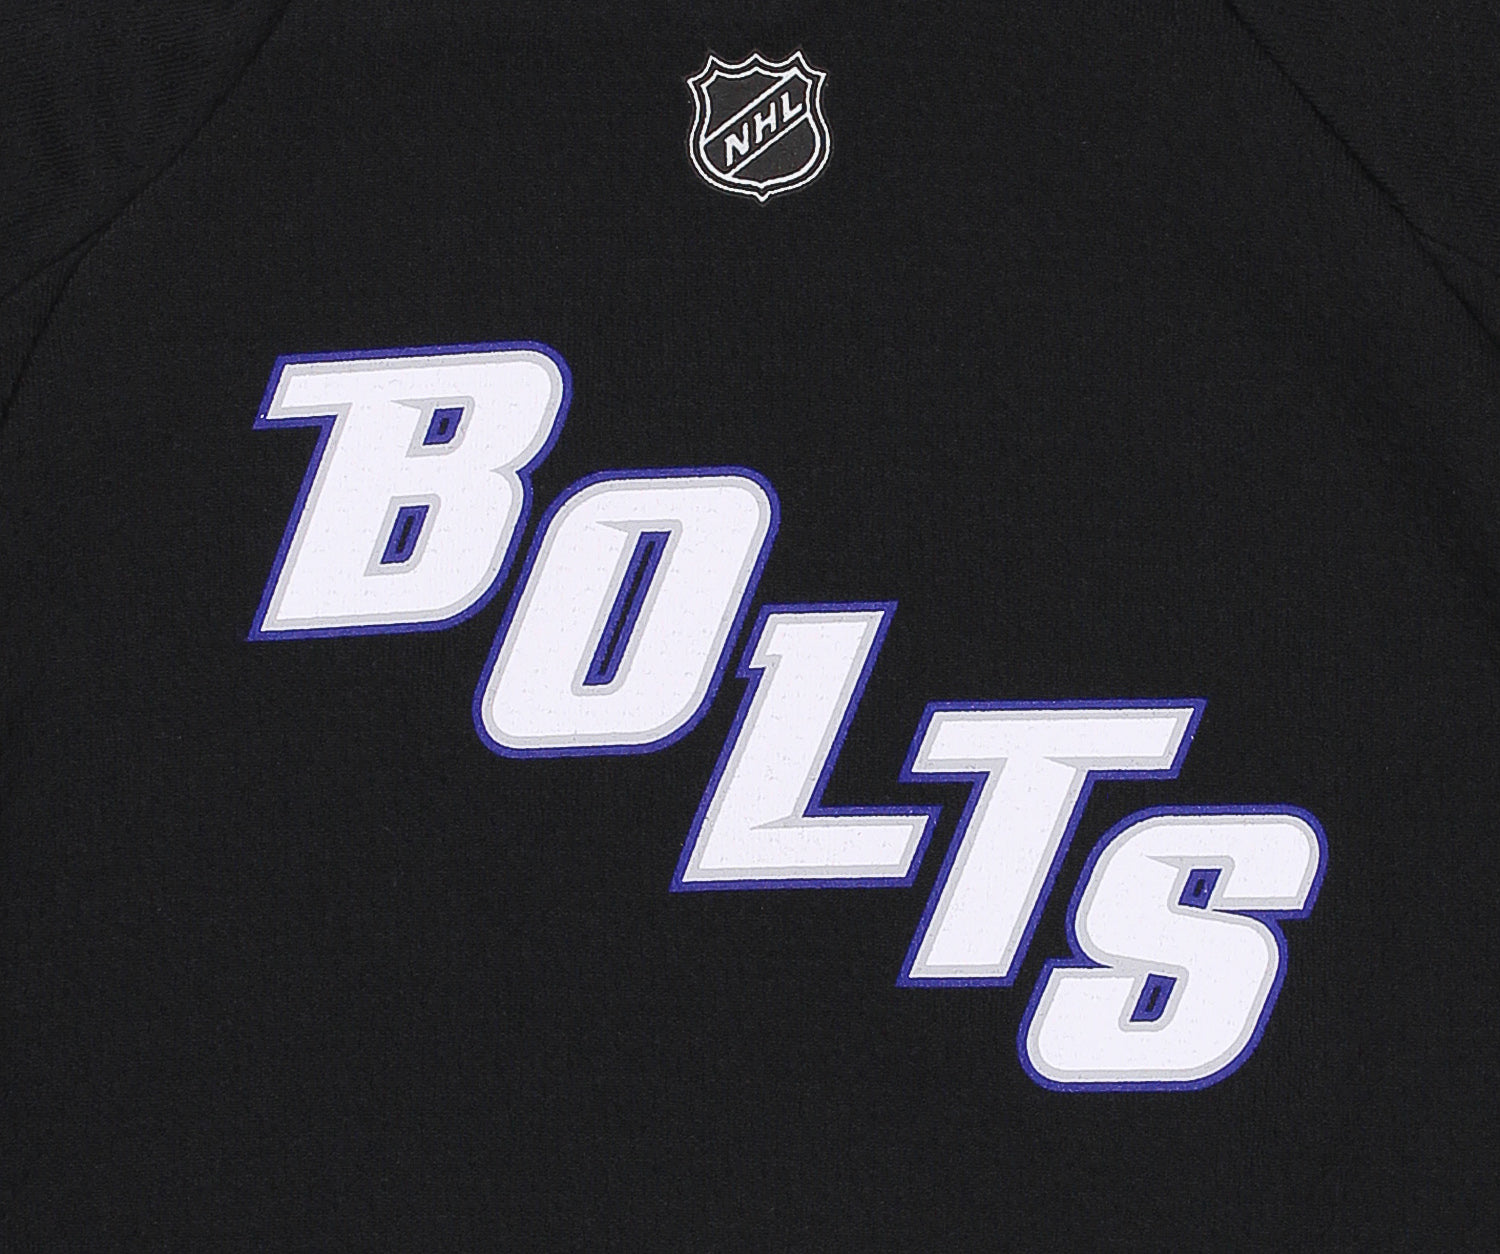 Reebok NHL Youth Boys Tampa Bay Lightning Alternate Premier Jersey, Blue - L / XL